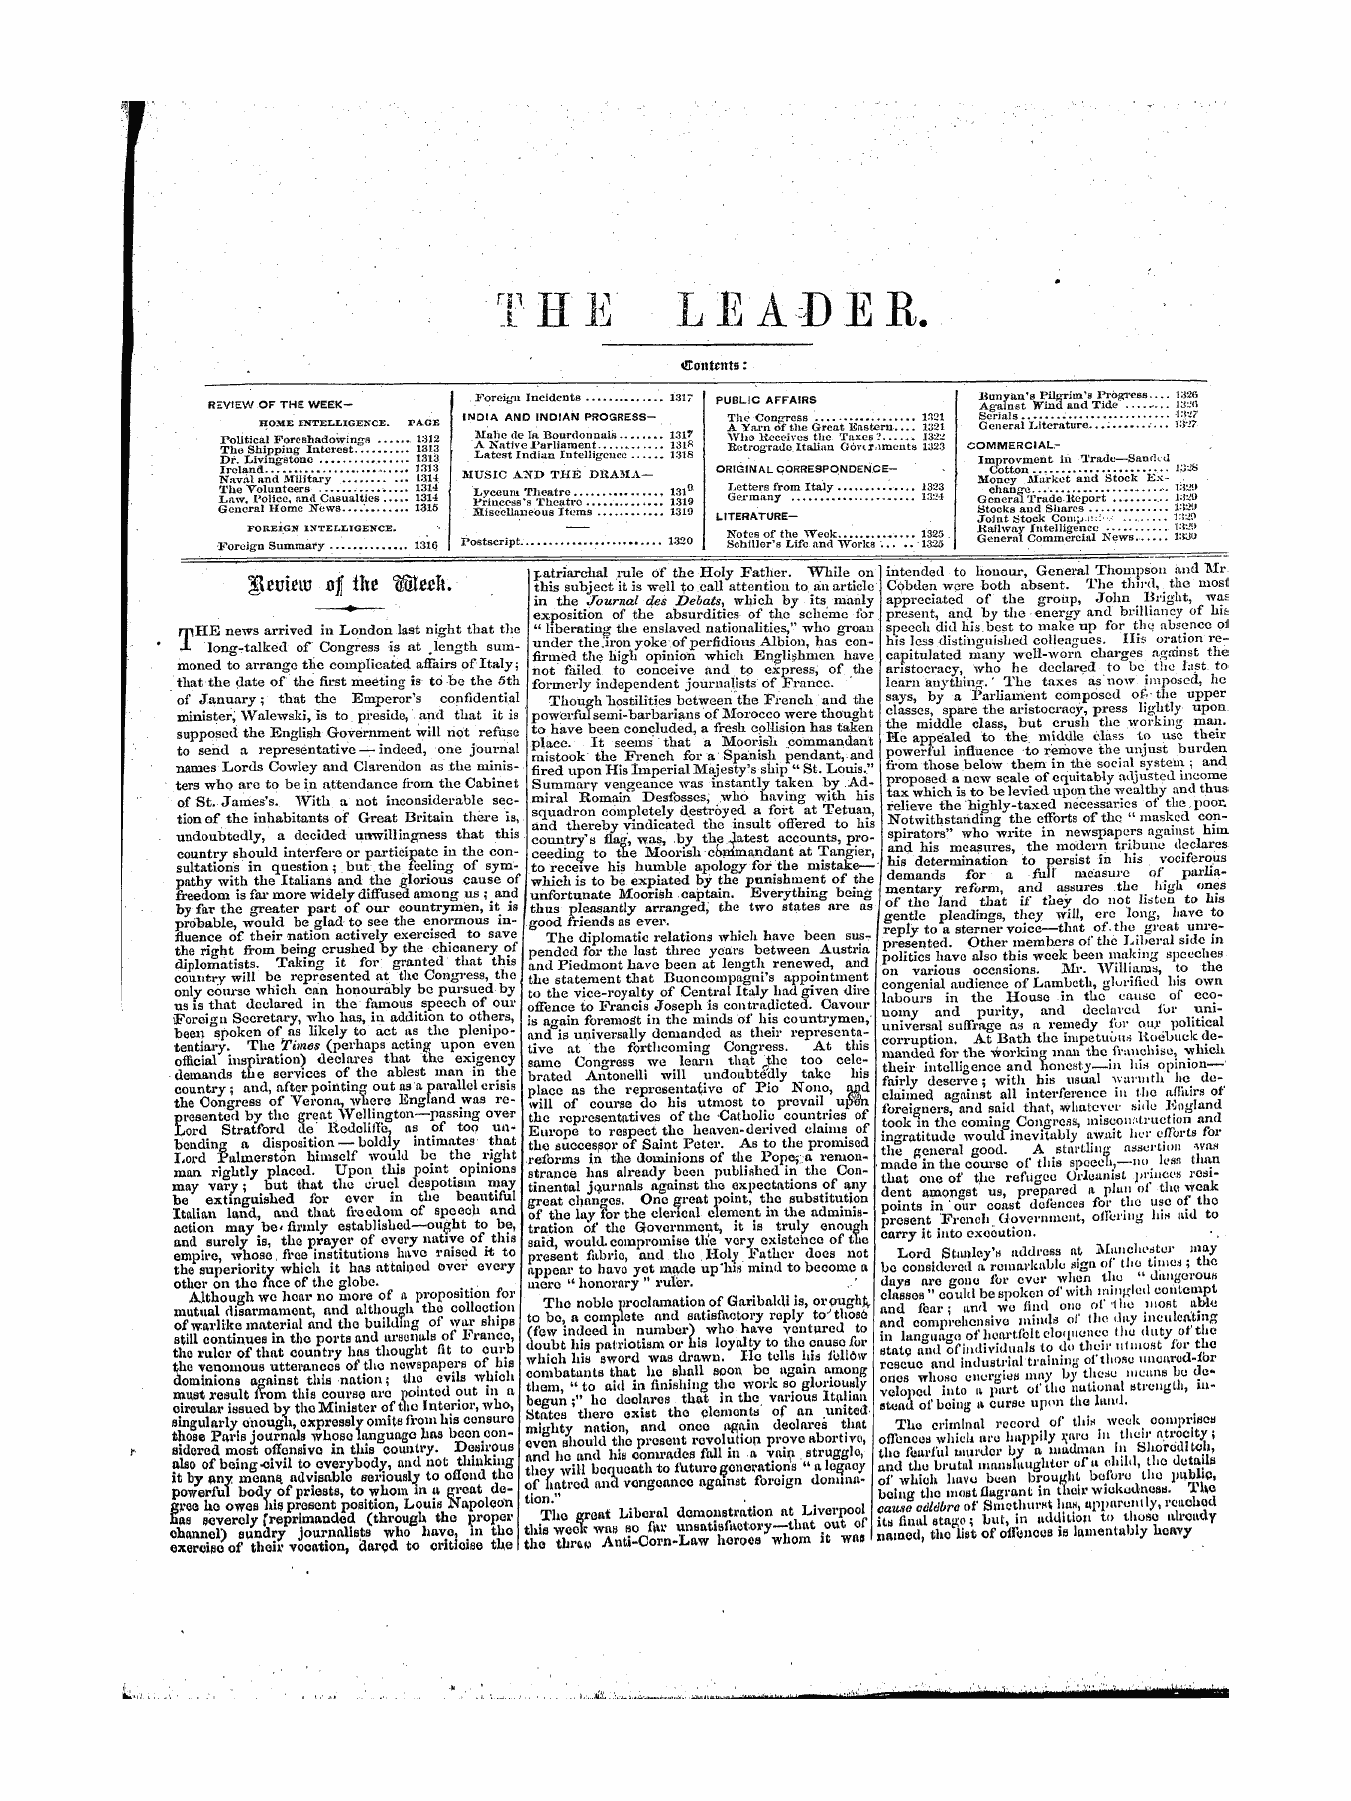 Leader (1850-1860): jS F Y, 1st edition - Cyj ? -If 4t Cy&Gt;F T. Iicuieltj Ojl Tjte (L(Xlmu ^